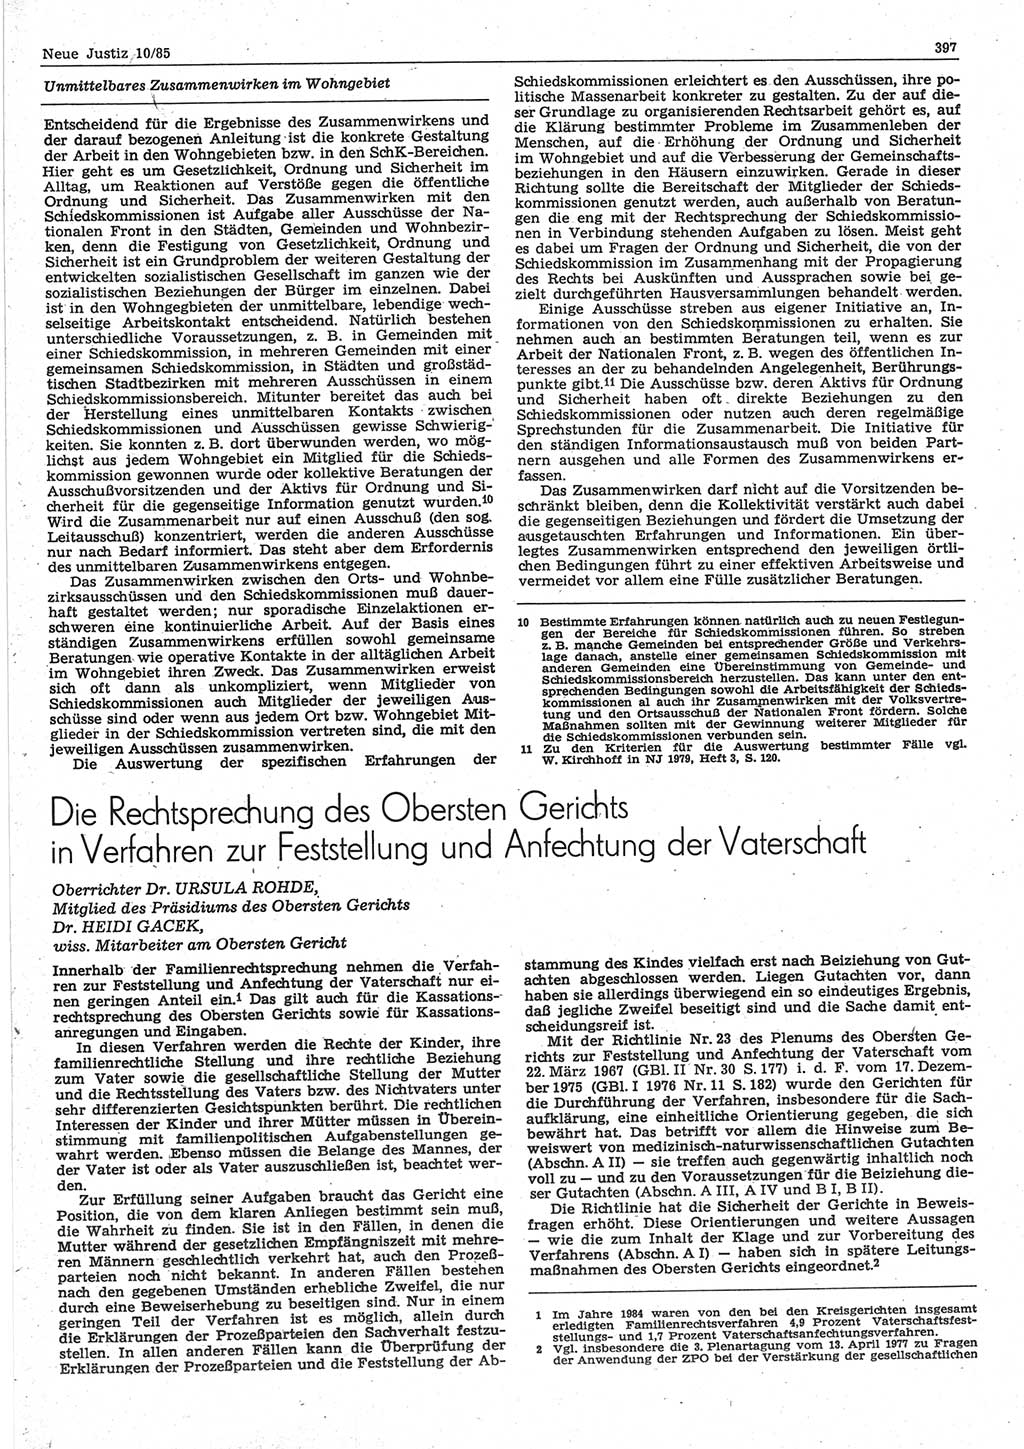 Neue Justiz (NJ), Zeitschrift für sozialistisches Recht und Gesetzlichkeit [Deutsche Demokratische Republik (DDR)], 39. Jahrgang 1985, Seite 397 (NJ DDR 1985, S. 397)